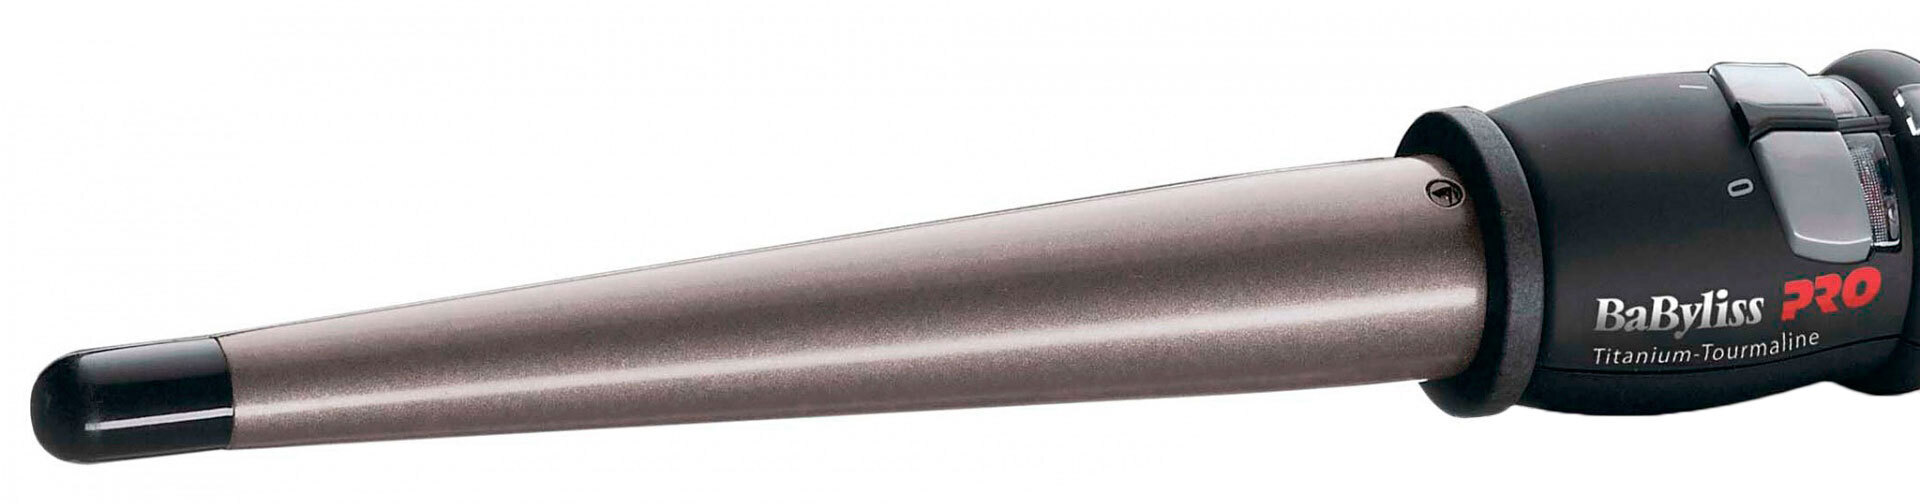 Профессиональная конусная плойка BaByliss PRO Titanium Tourmaline BAB2280TTE 13-25 мм - 2